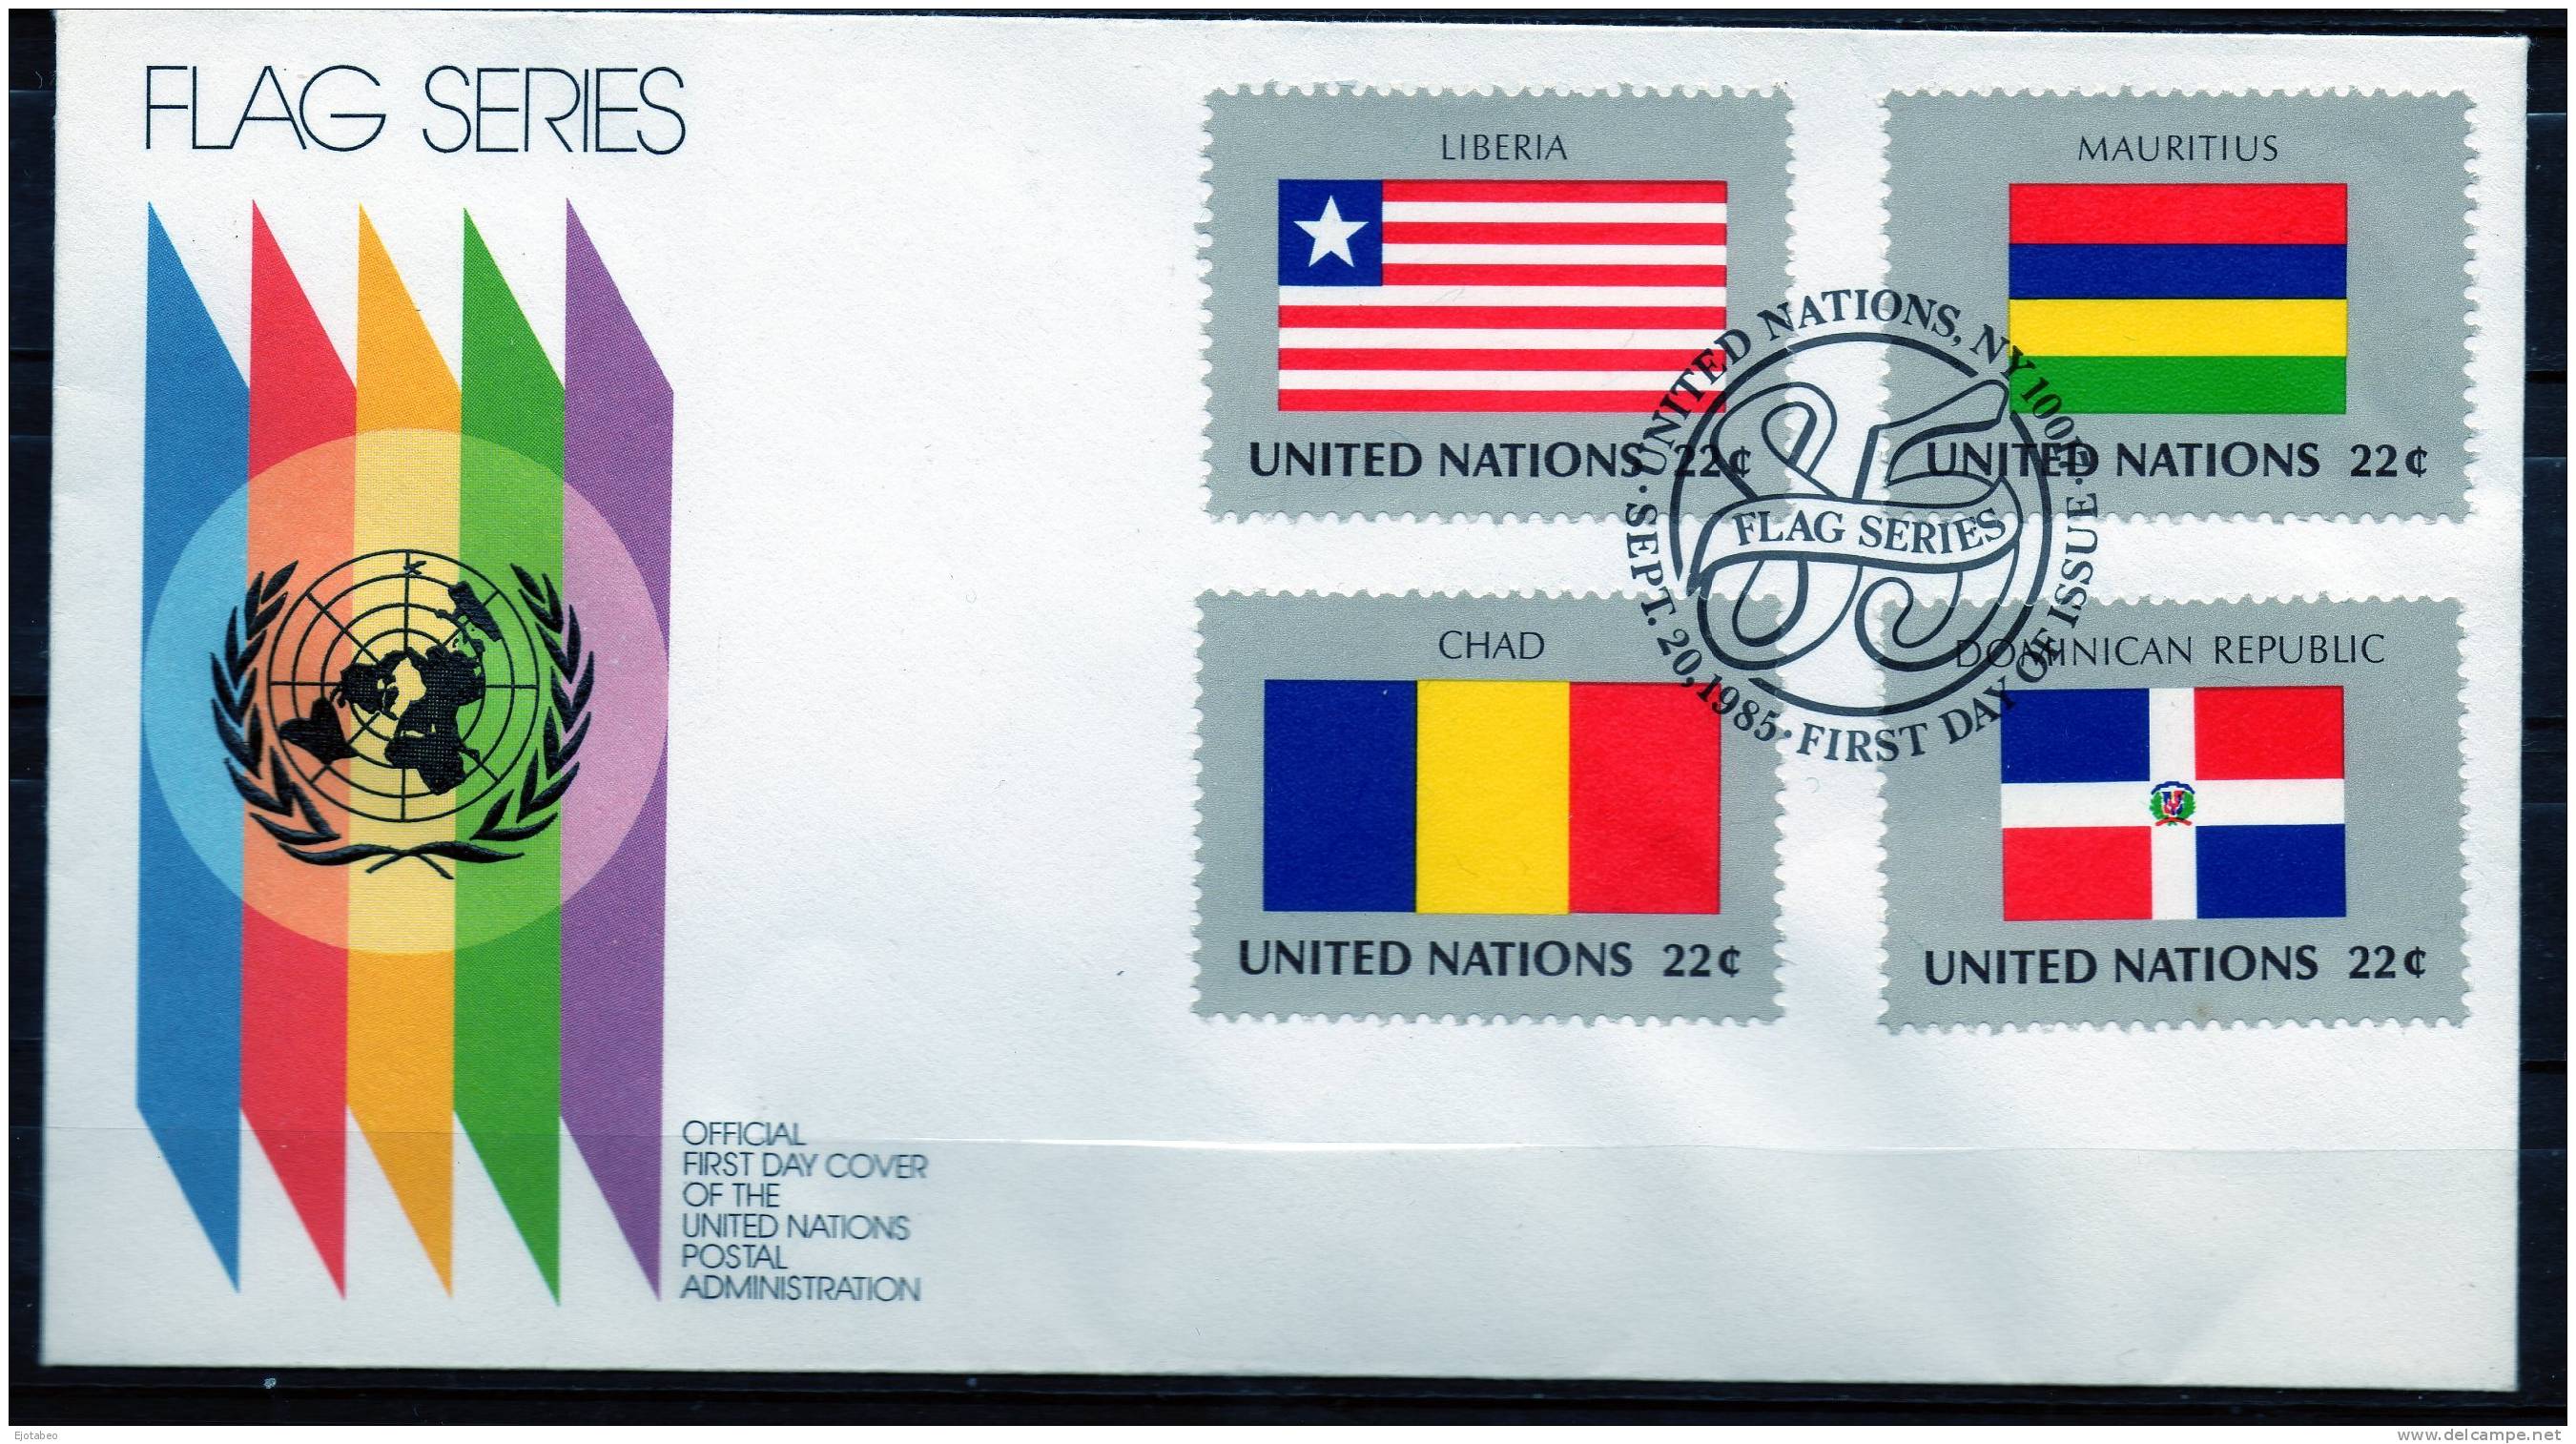 7 NACIONES UNIDAS -1985- FDC- NUEVA YORK- Serie Banderas - Unused Stamps